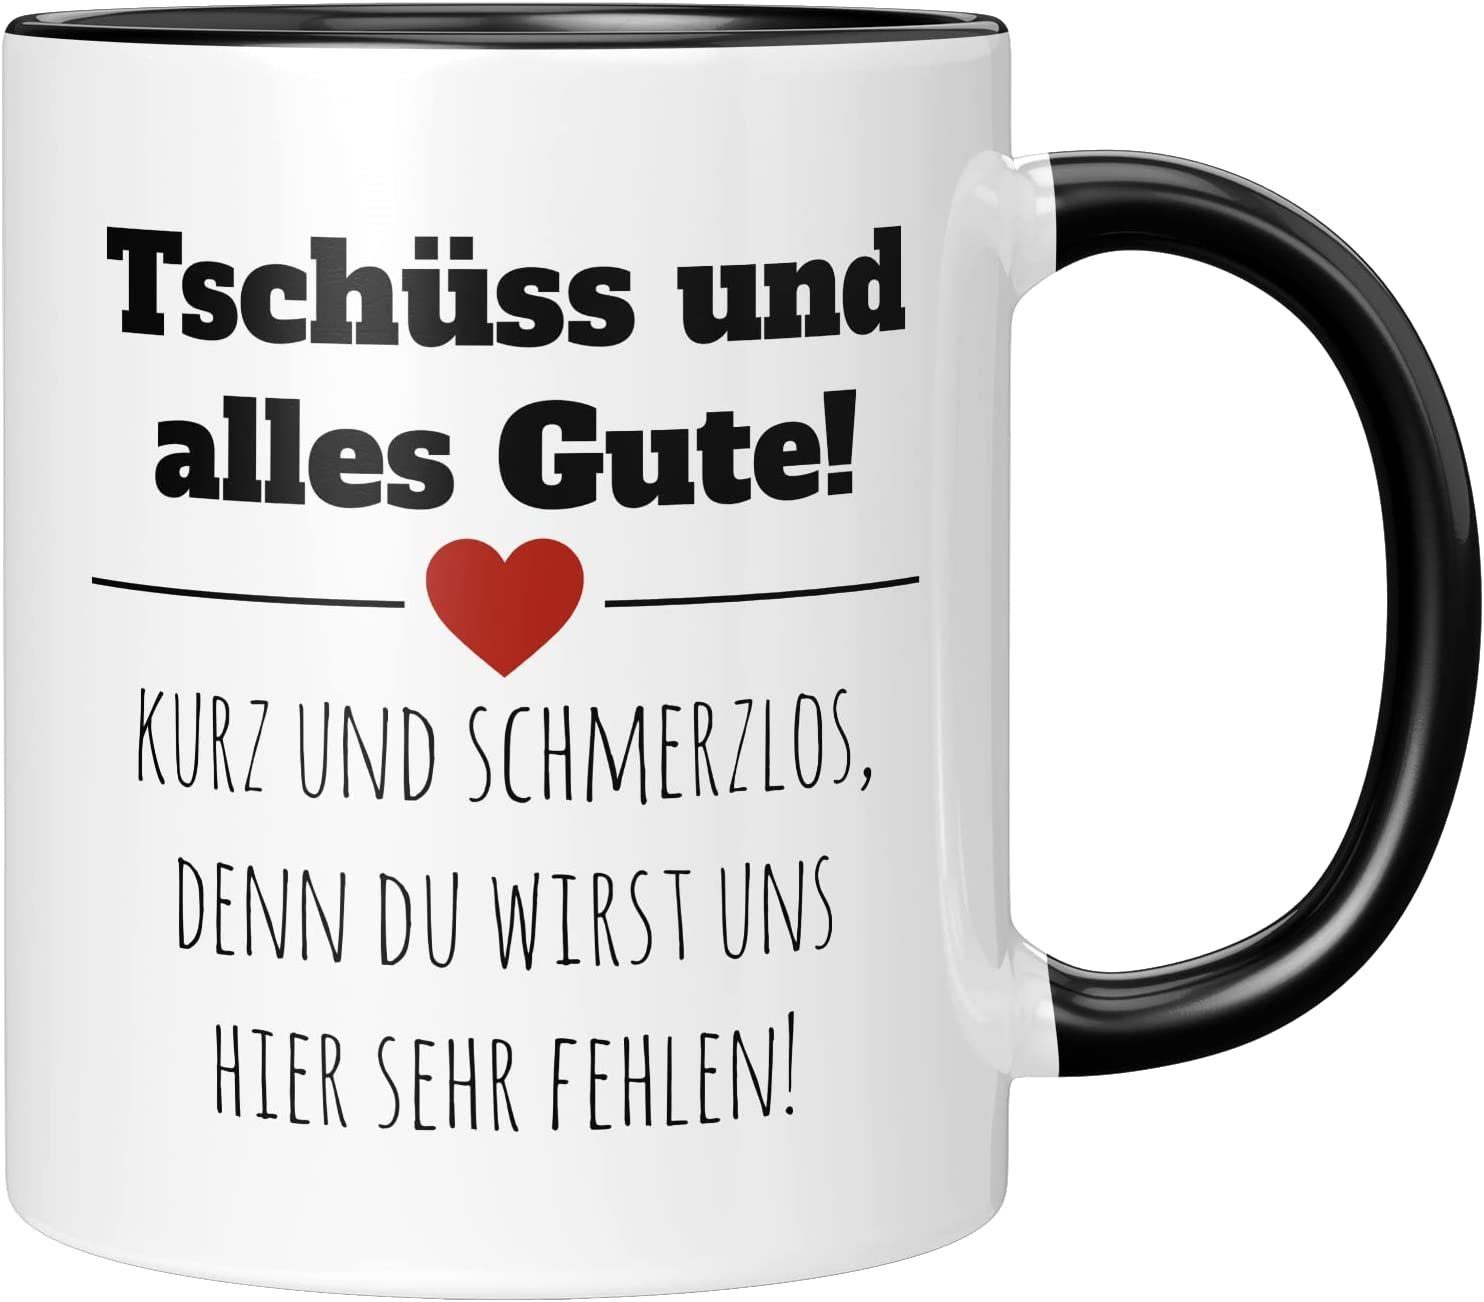 TassenTicker Tasse TASSENTICKER - Tschüss und alles gute! - Abschiedsgeschenk -Jobwechsel, 330ml Schwarz